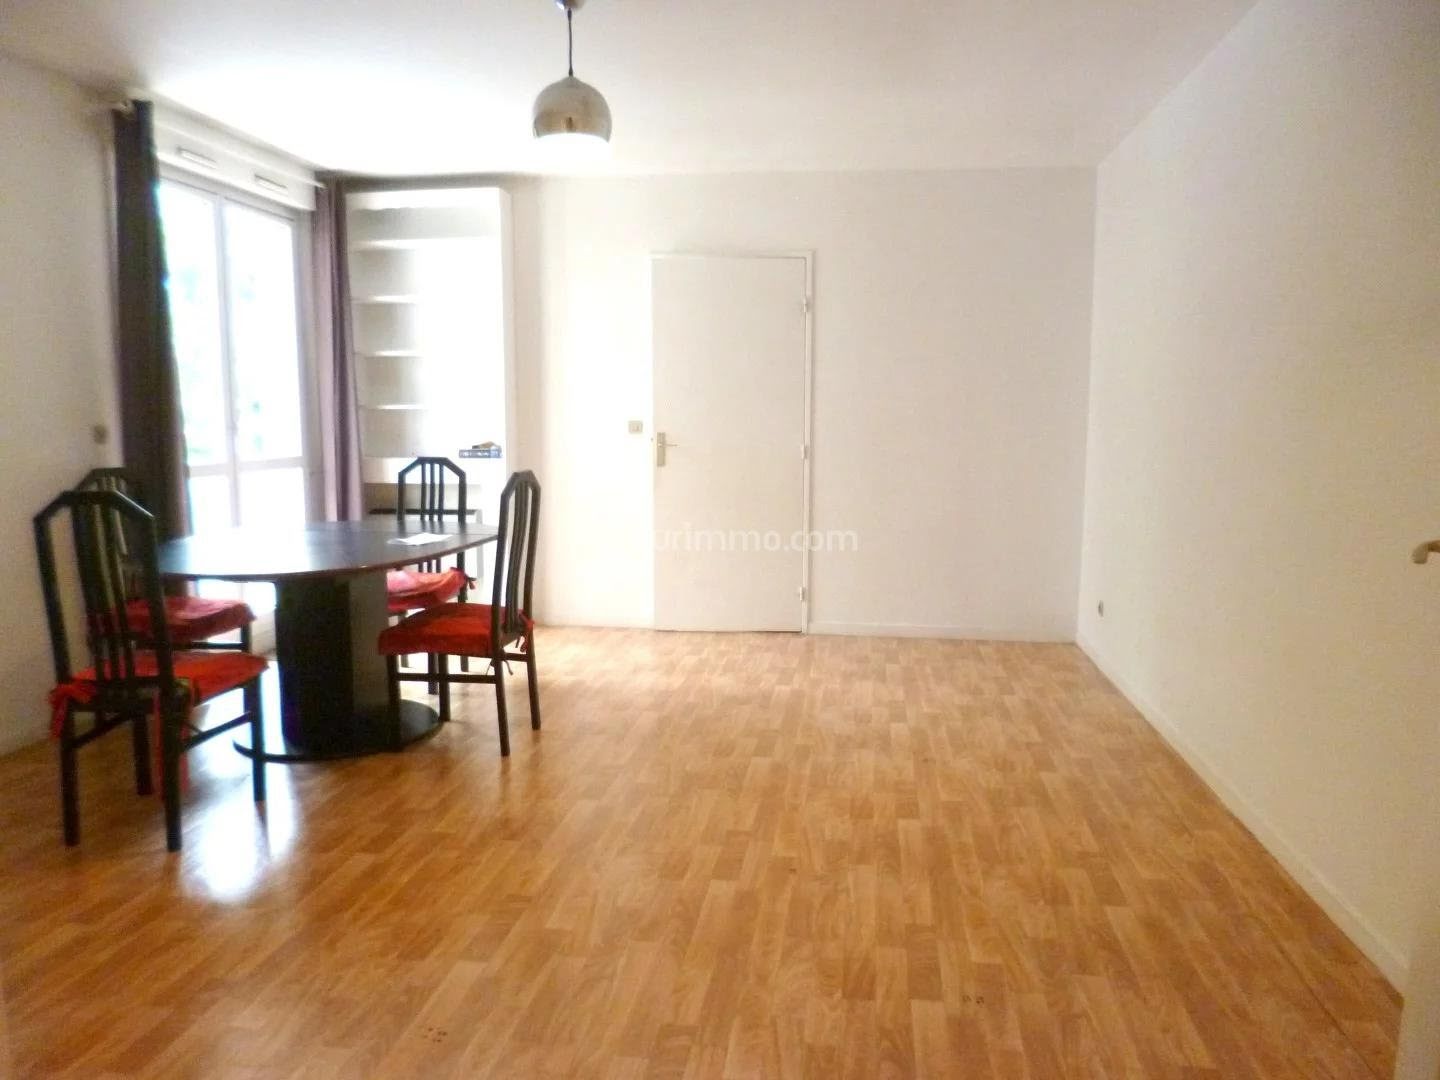 Location appartement meublé 2 pièces 50,44 m2